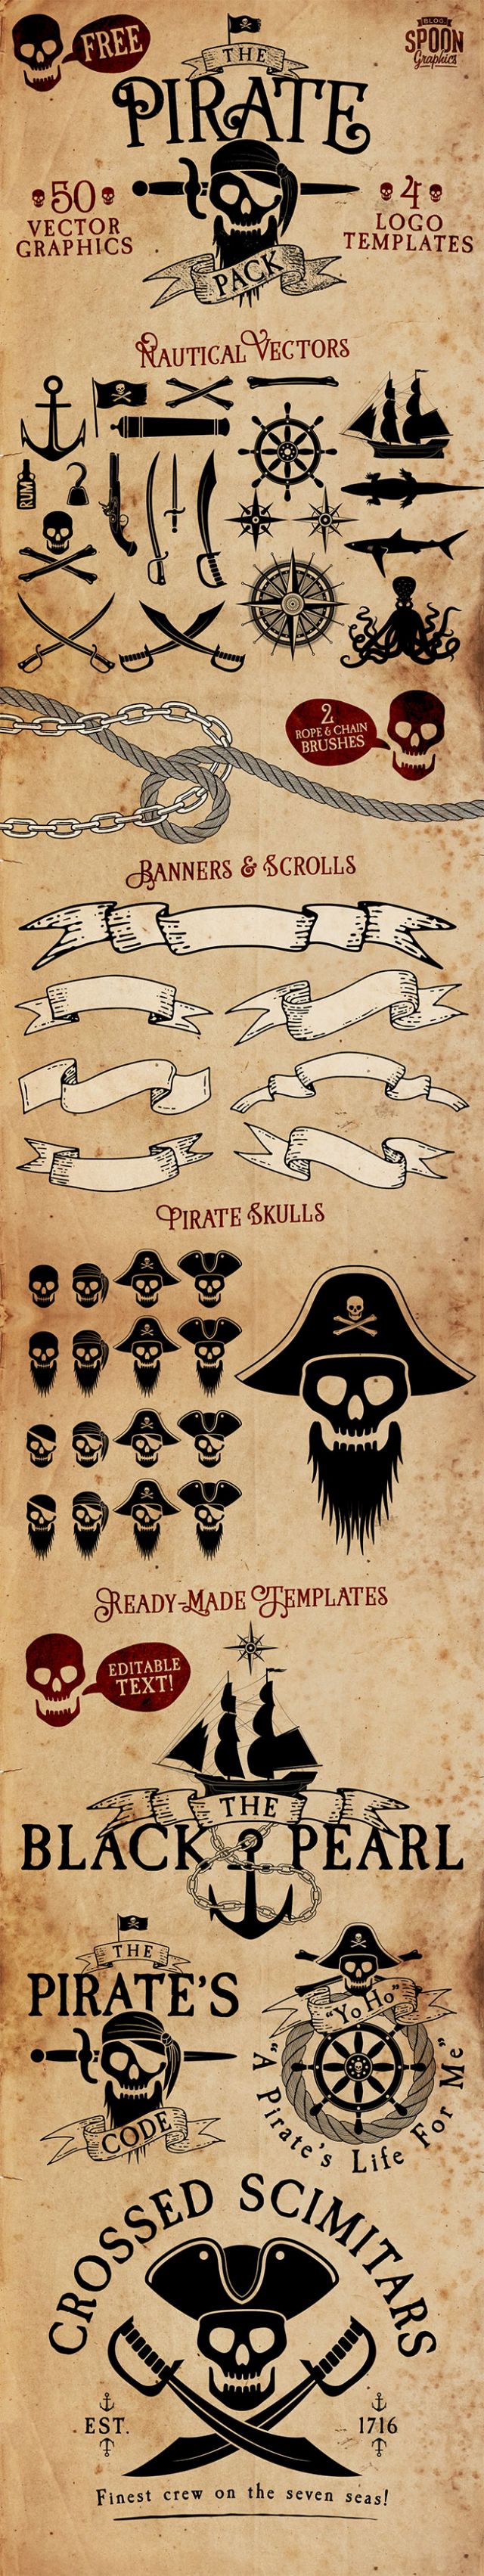 無料ダウンロード 海賊 イラスト 素材 かわいいフリー素材集 いらすとや